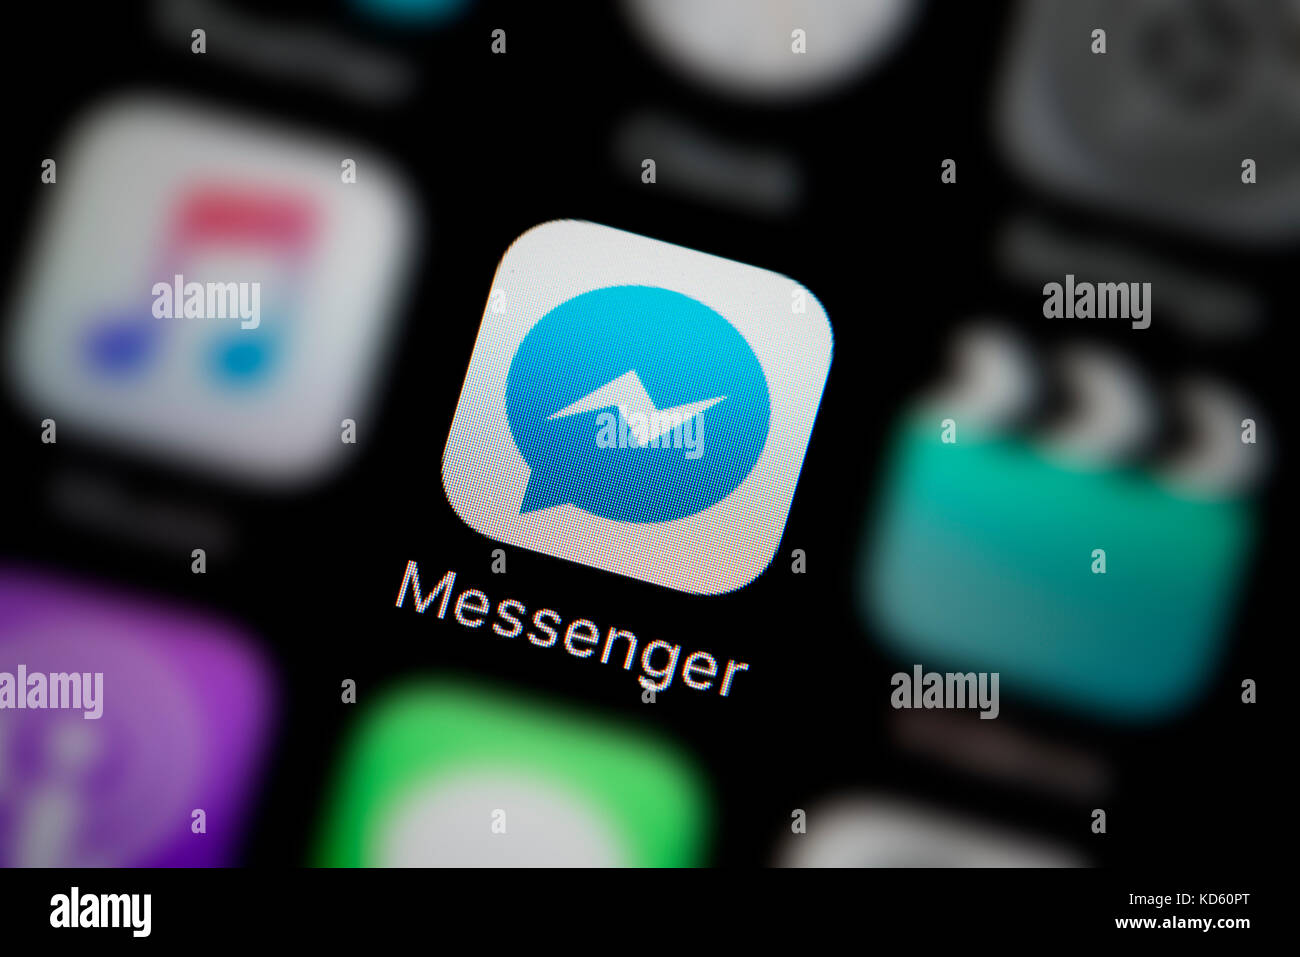 Una inquadratura ravvicinata del logo della società che rappresentano il Facebook Messenger Icona app, come si vede sullo schermo di un telefono intelligente (solo uso editoriale) Foto Stock